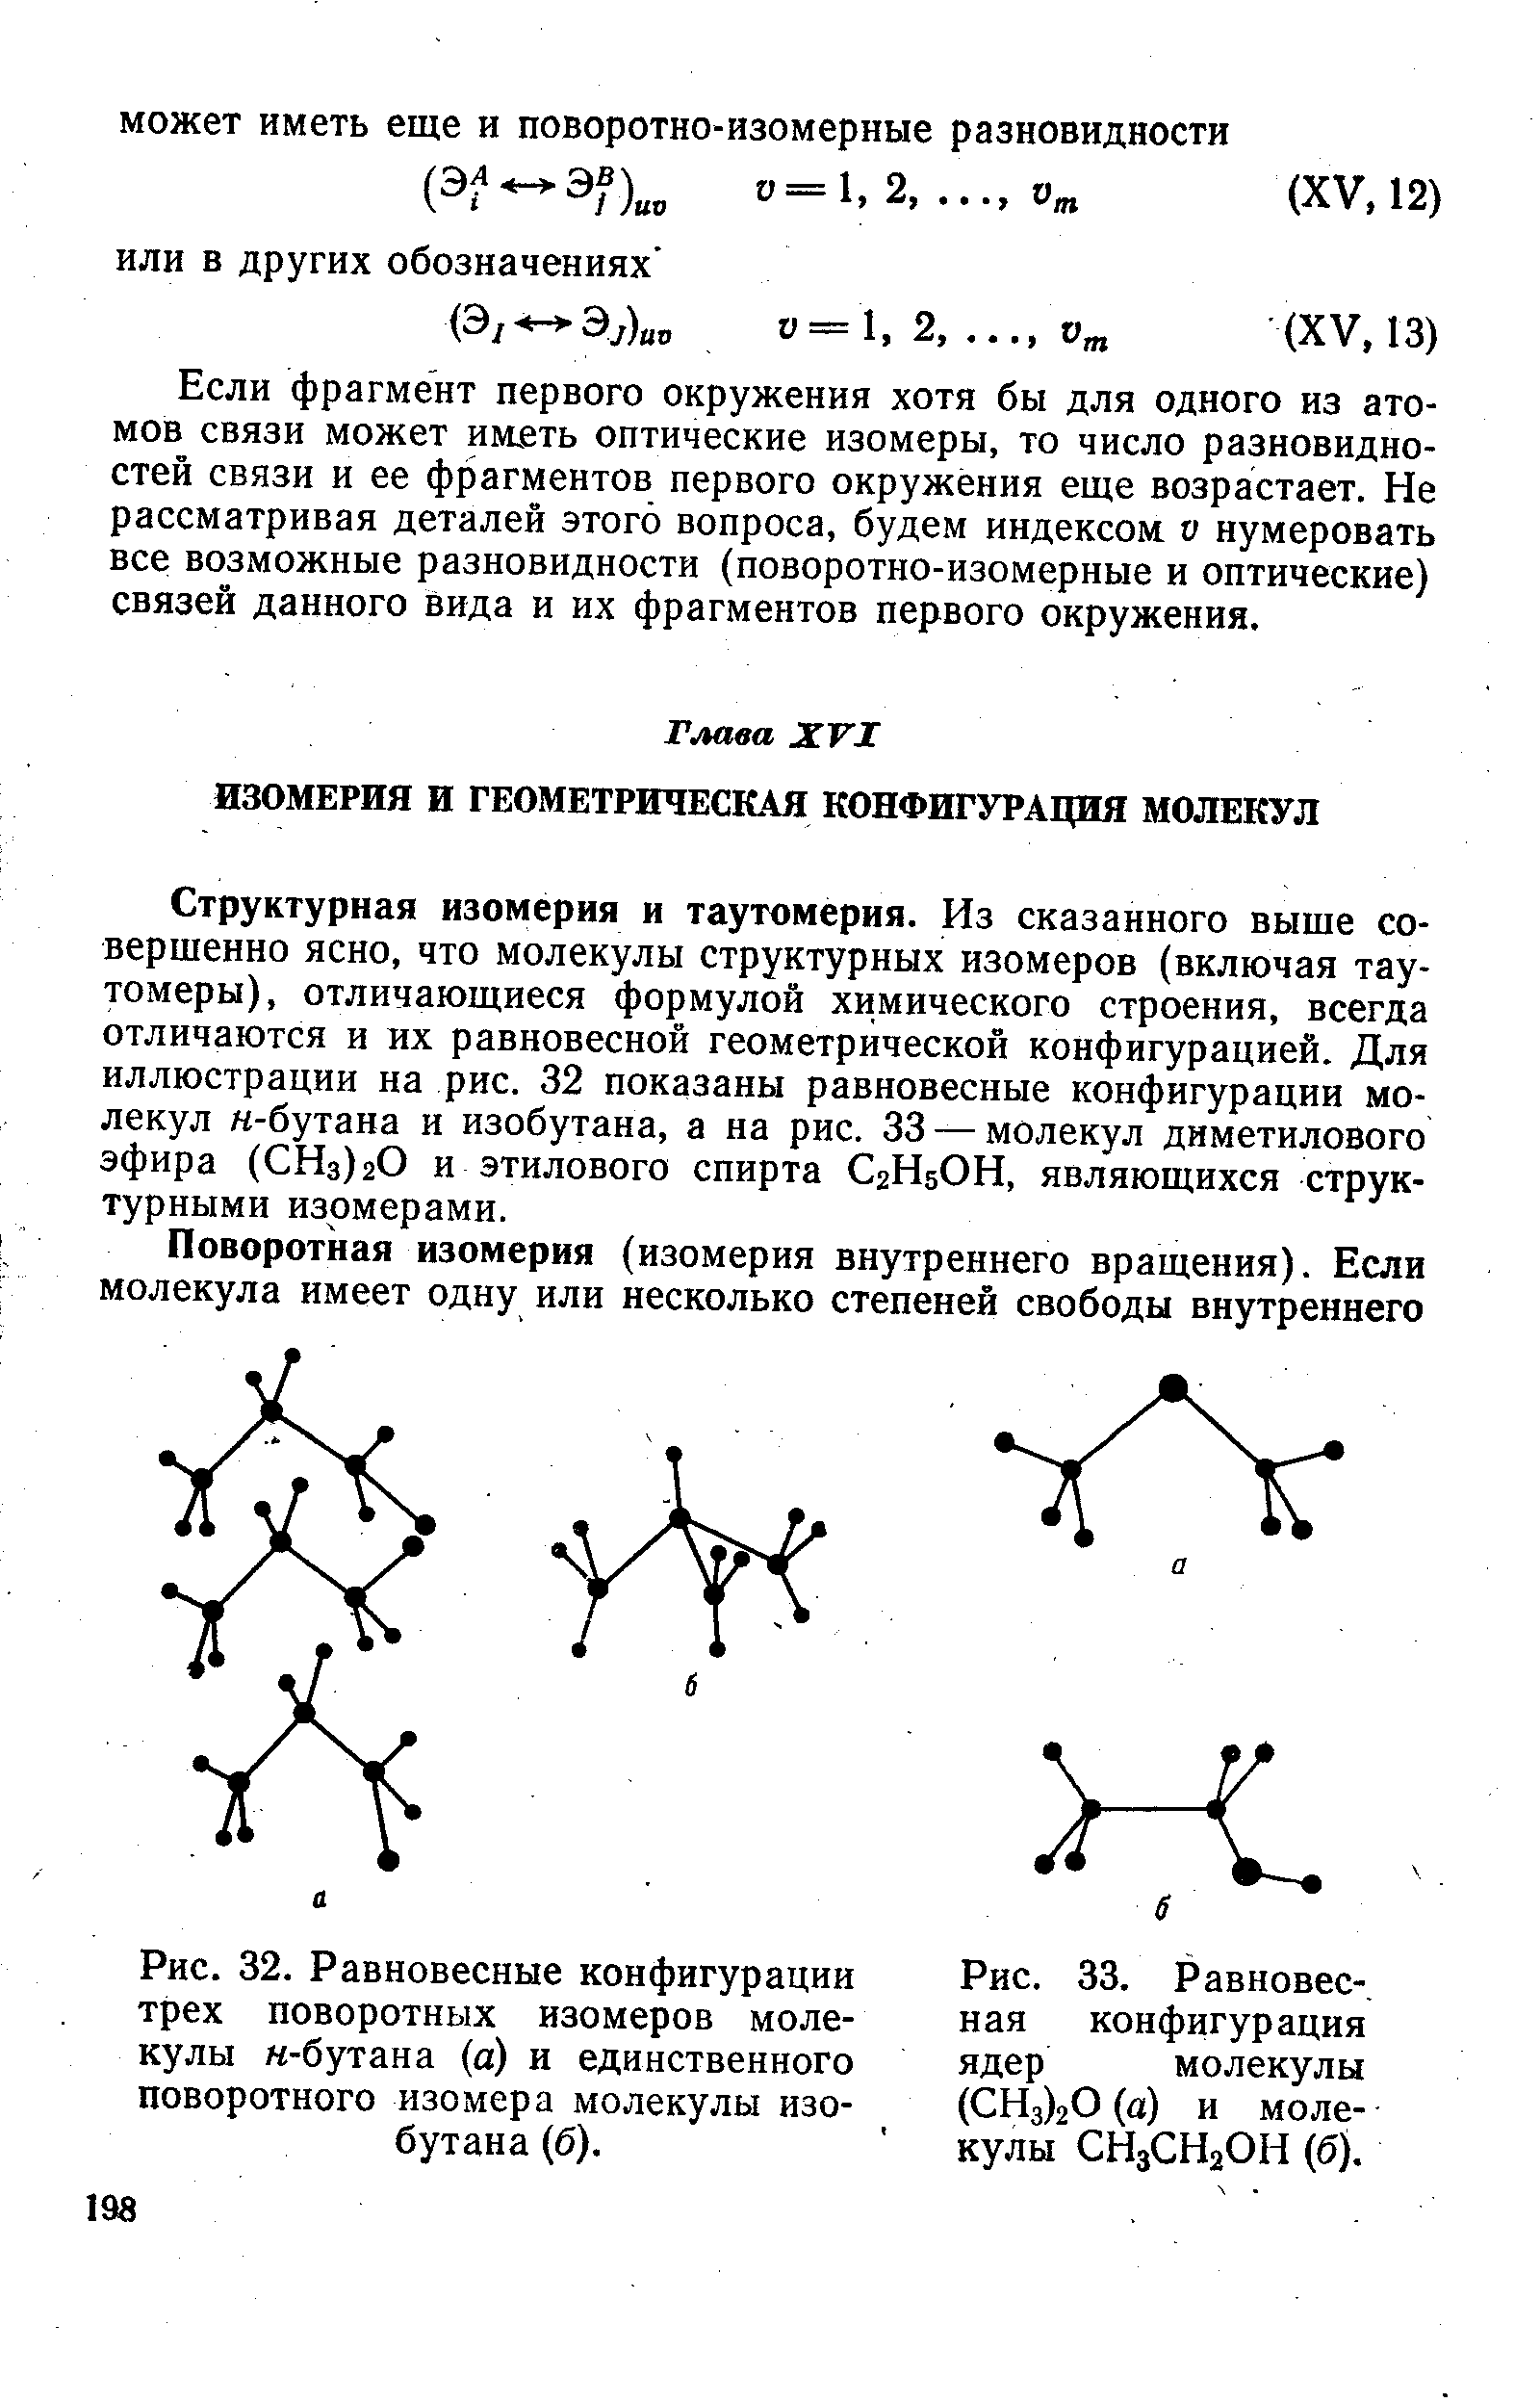 Структурная изомерия и таутомерия. Из сказанного выще совершенно ясно, что молекулы структурных изомеров (включая тау-томеры), отличающиеся формулой химического строения, всегда отличаются и их равновесной геометрической конфигурацией. Для иллюстрации на рис. 32 показаны равновесные конфигурации молекул н-бутана и изобутана, а на рис. 33 — молекул диметилового эфира (СНз)гО и этилового спирта С2Н5ОН, являющихся структурными изомерами.